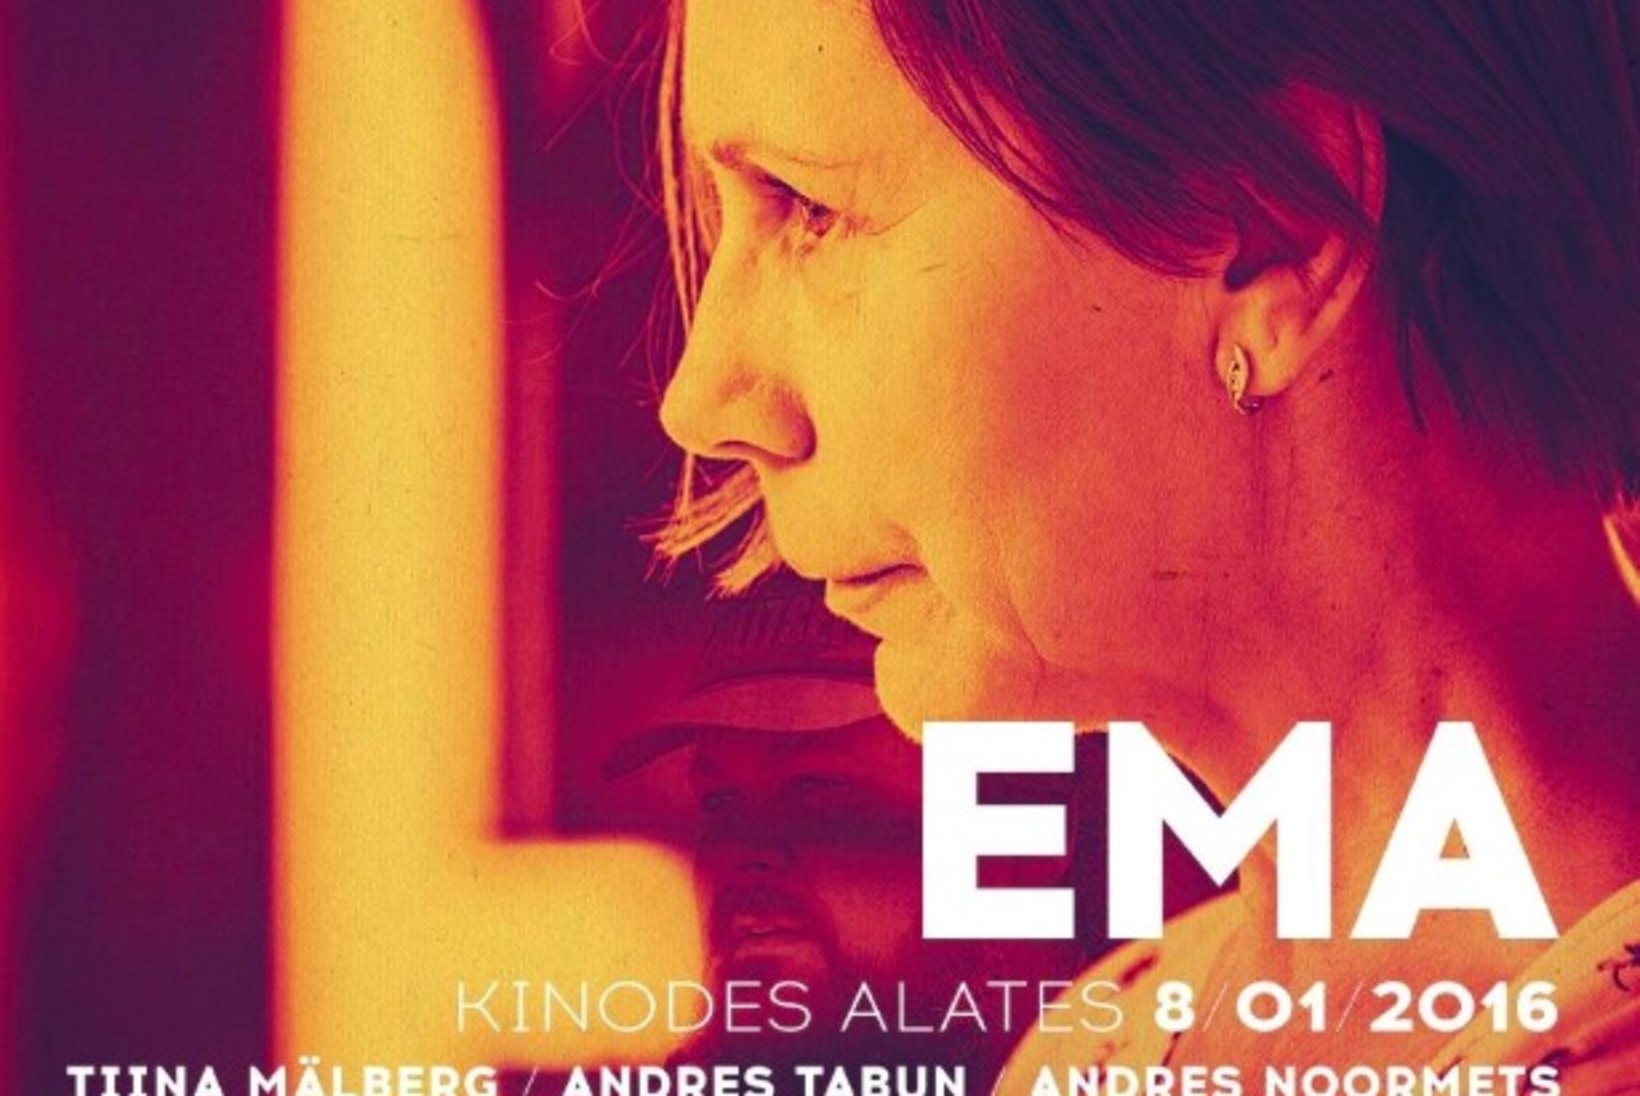 Tiina Mälberg võitis Hispaanias parima naispeaosatäitja auhinna filmi "Ema" eest